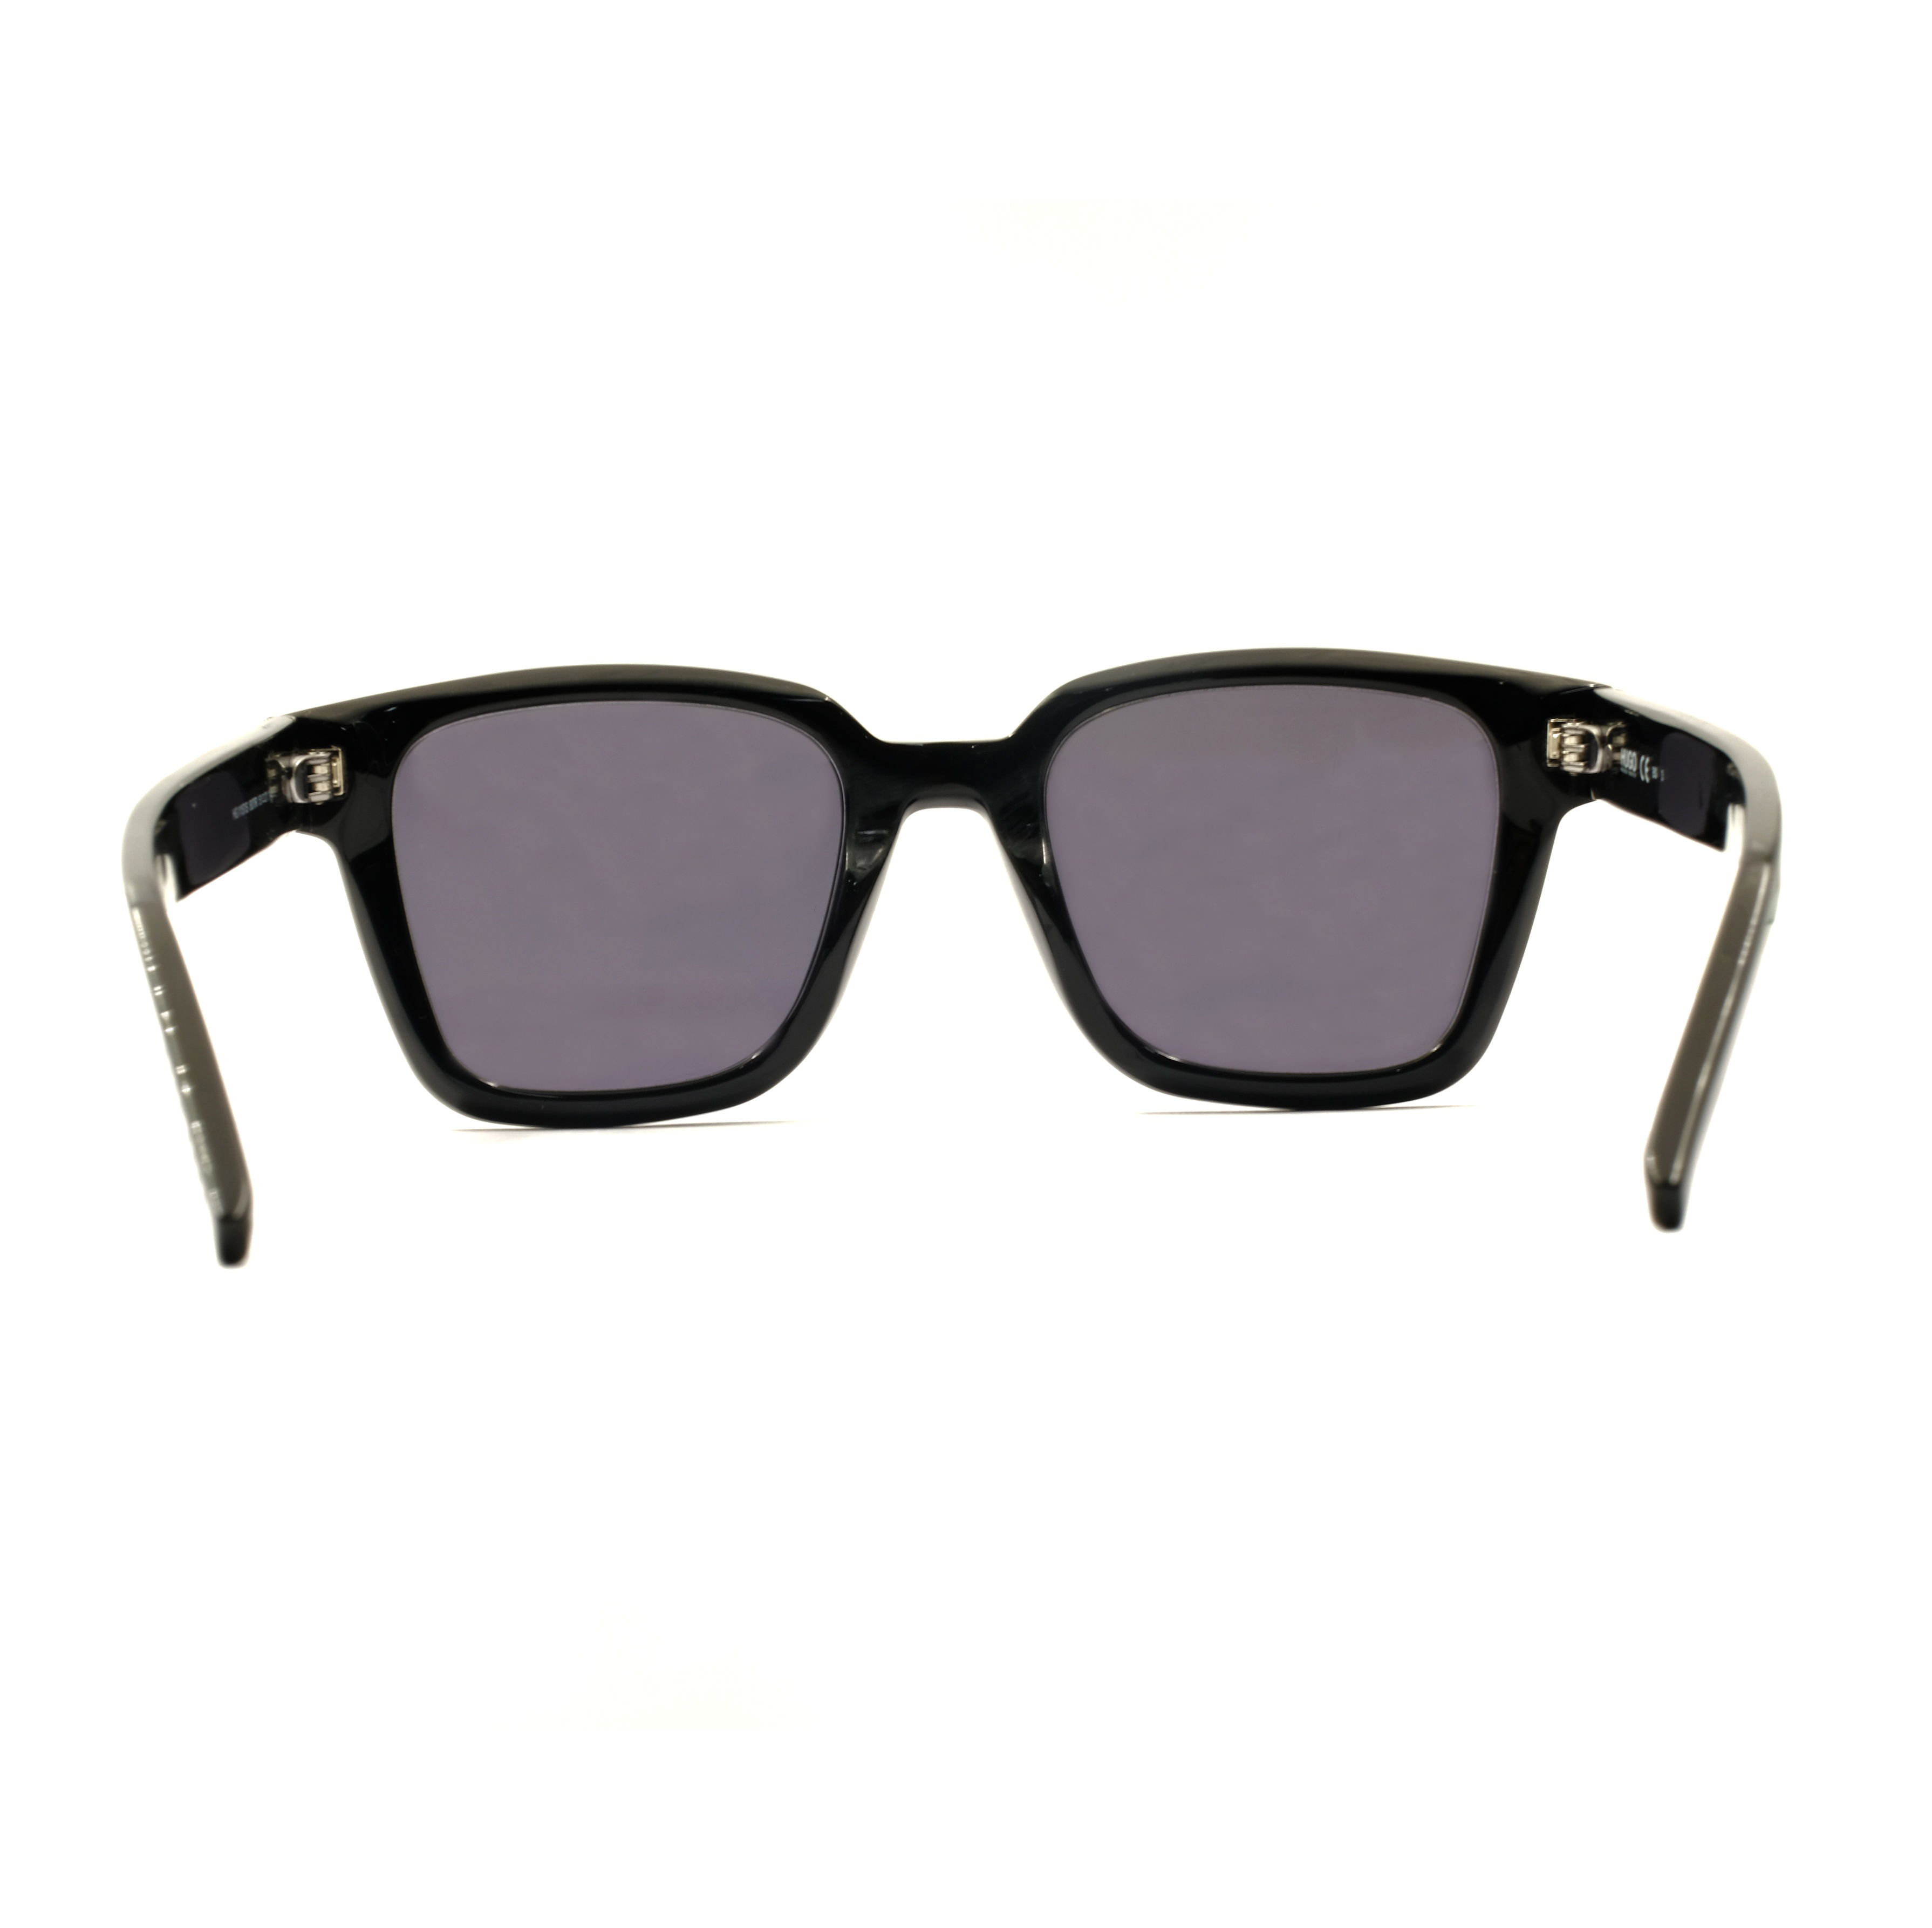 Gafas de sol cuadradas negras personalizadas 2021, gafas de sol de río, gafas de sol para hombre, moda de río, lujo clásico